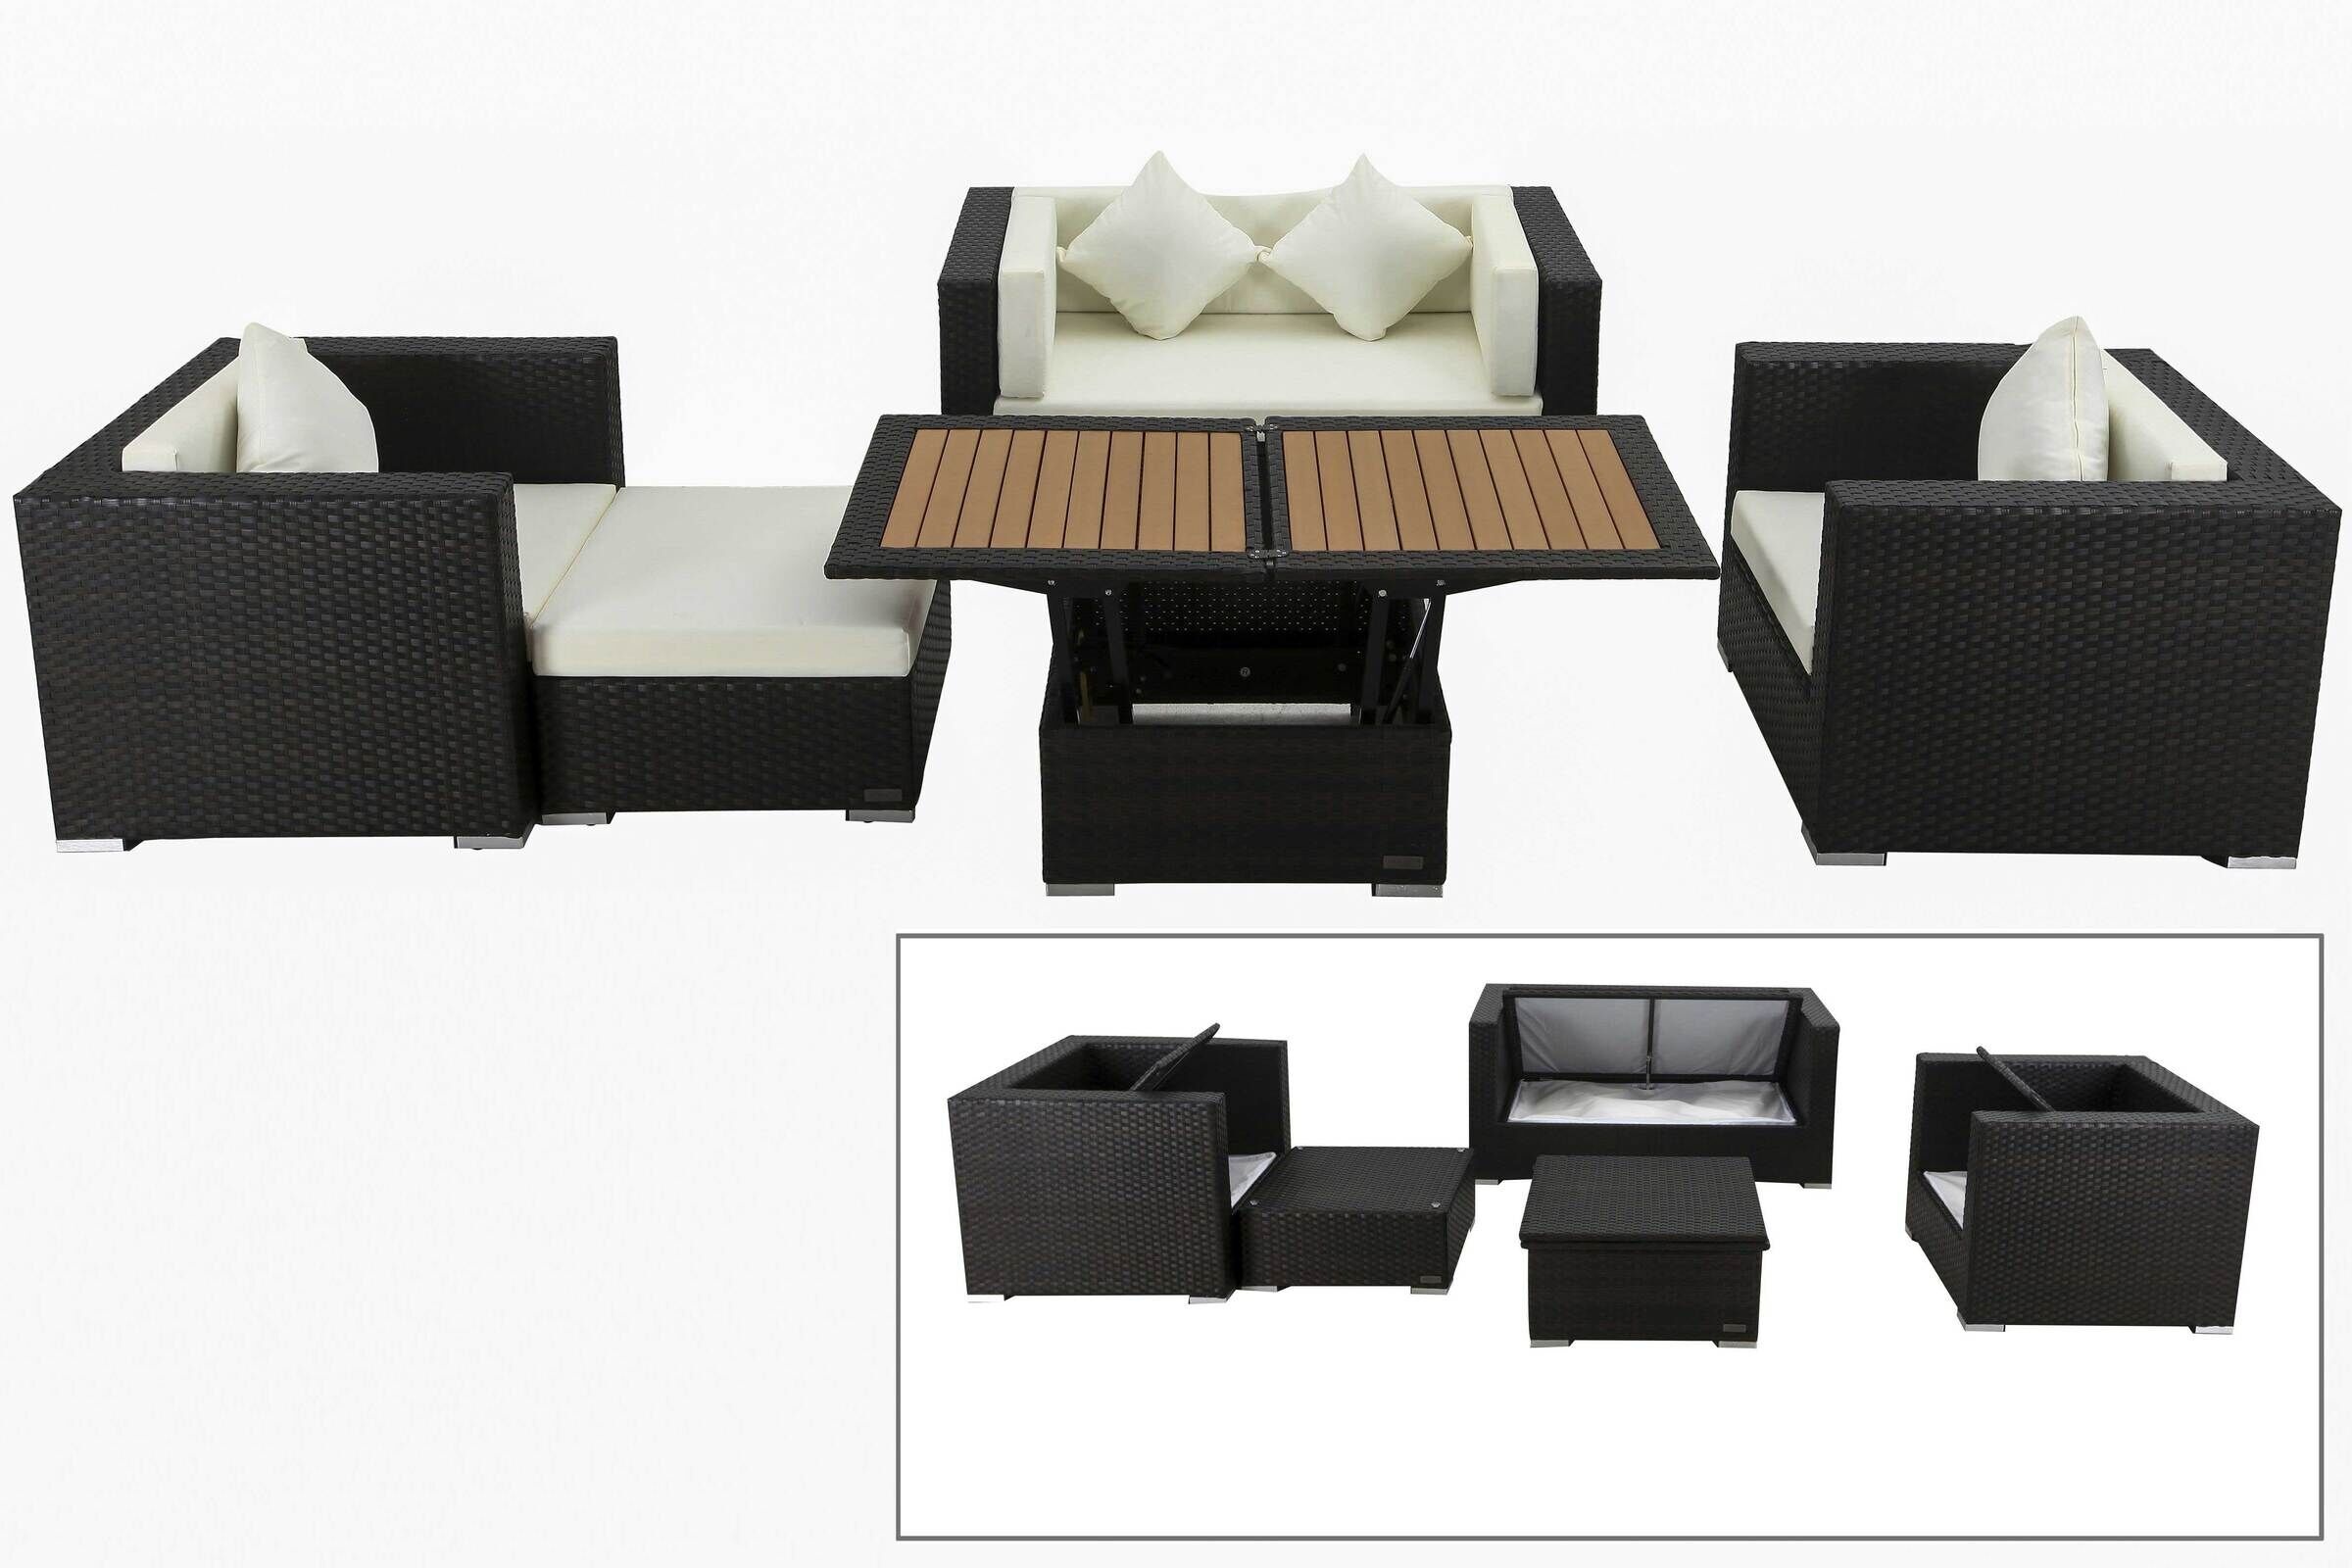 OUTFLEXX Lounge-Set, 5 Personen, braun, Polyrattan, inkl. Loungetisch, wasserfeste Kissenbox